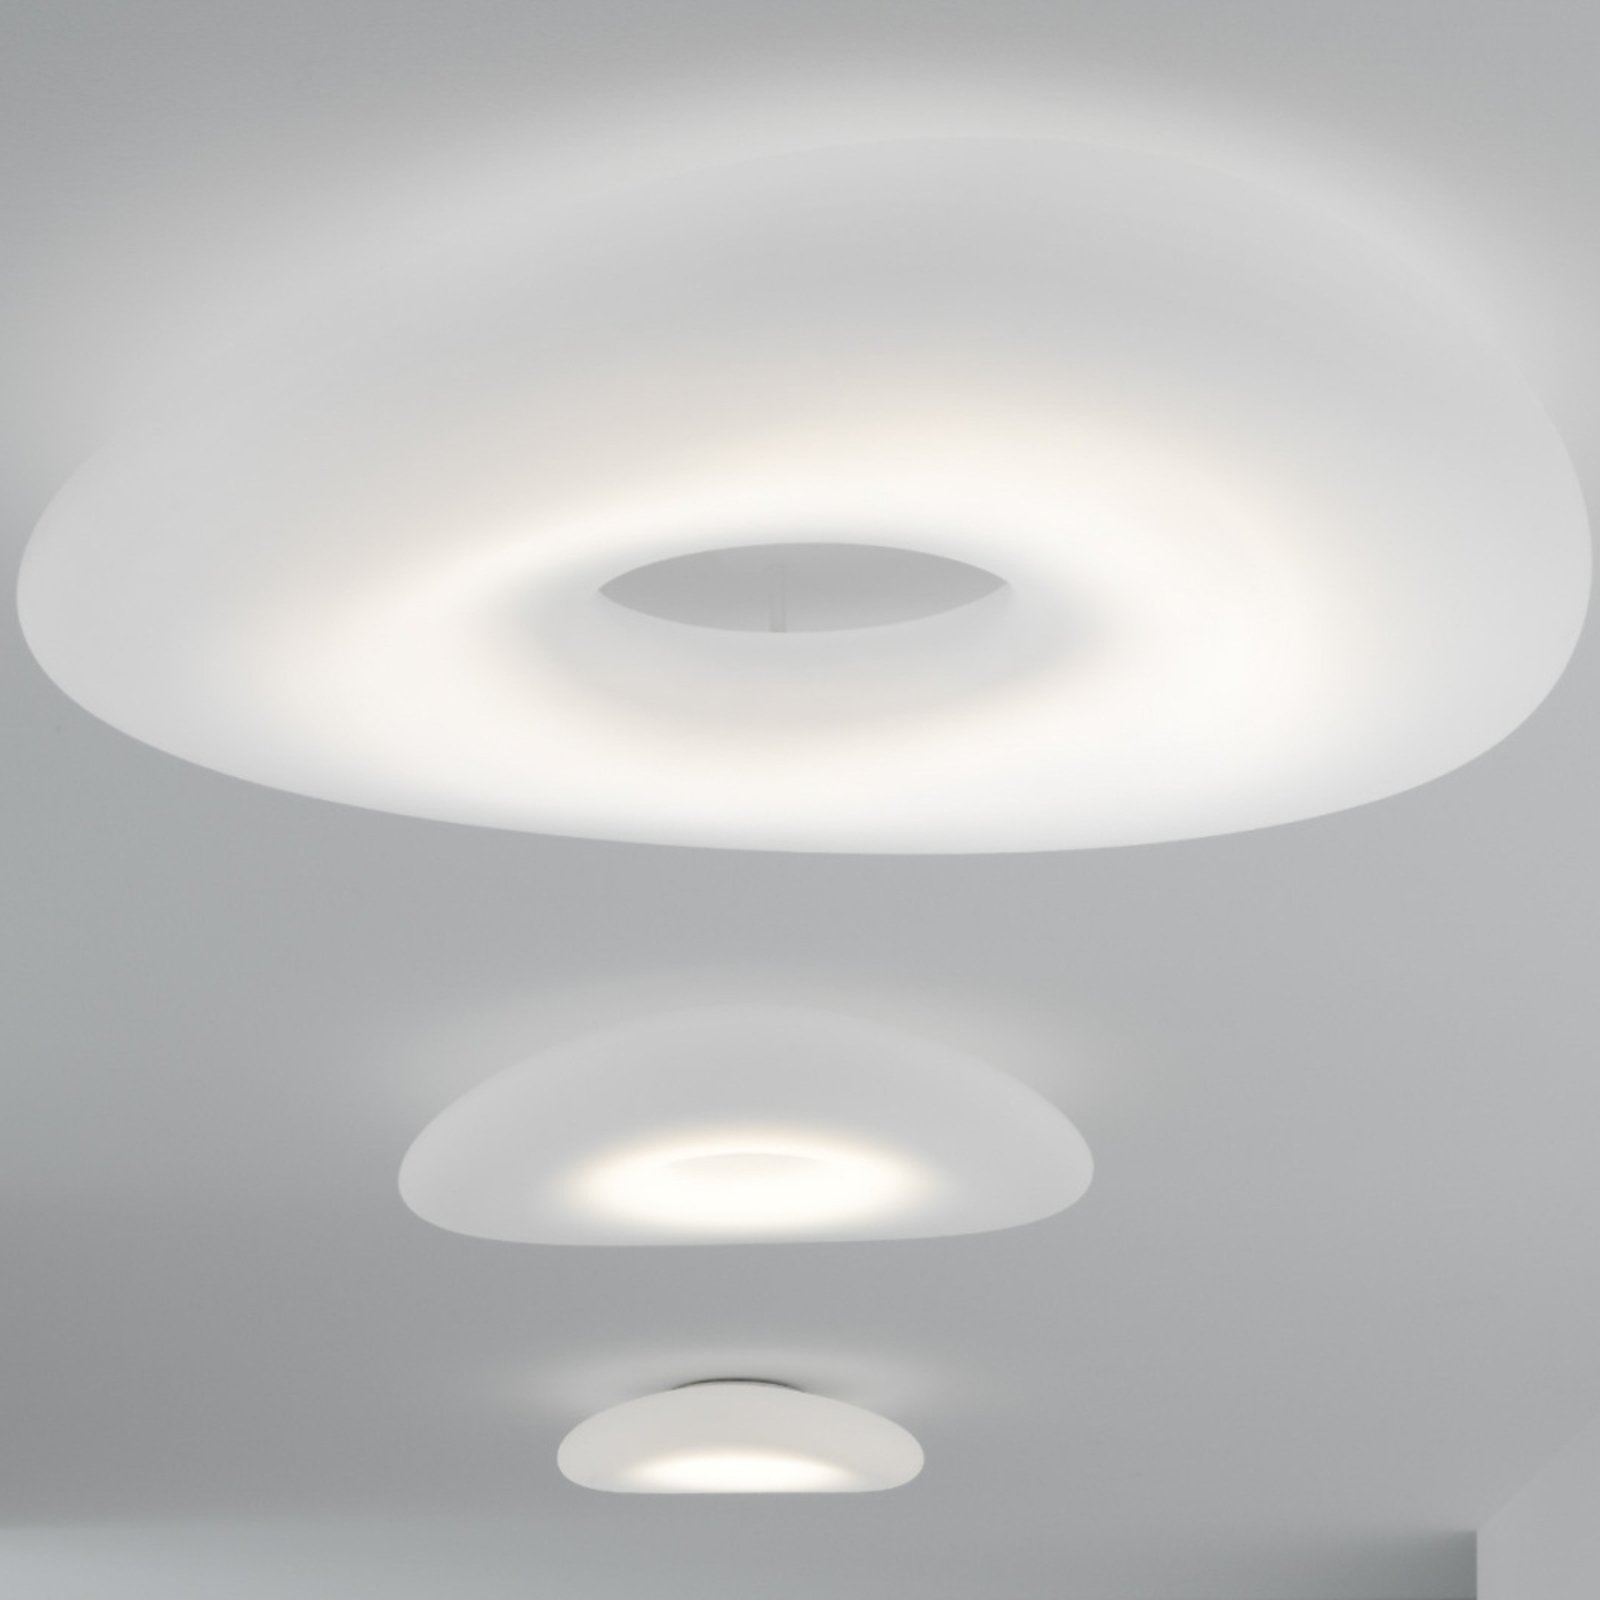 Stilnovo Mr. Magoo LED plafondlamp, DALI, Ø115cm